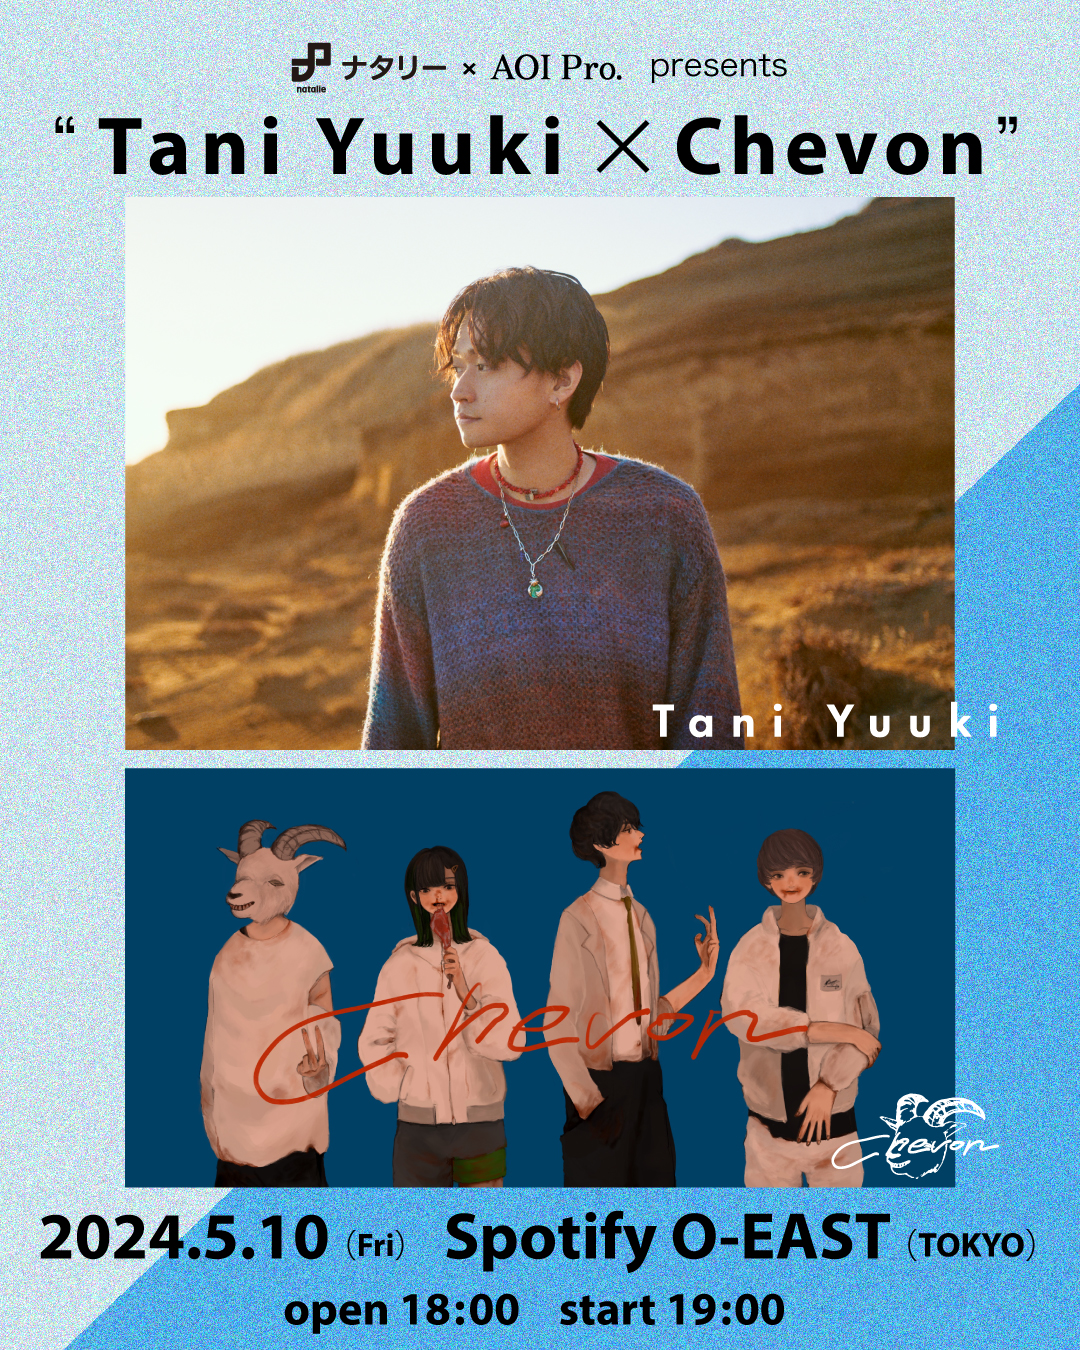 ナタリー×AOI Pro. presents  “Tani Yuuki × Chevon”